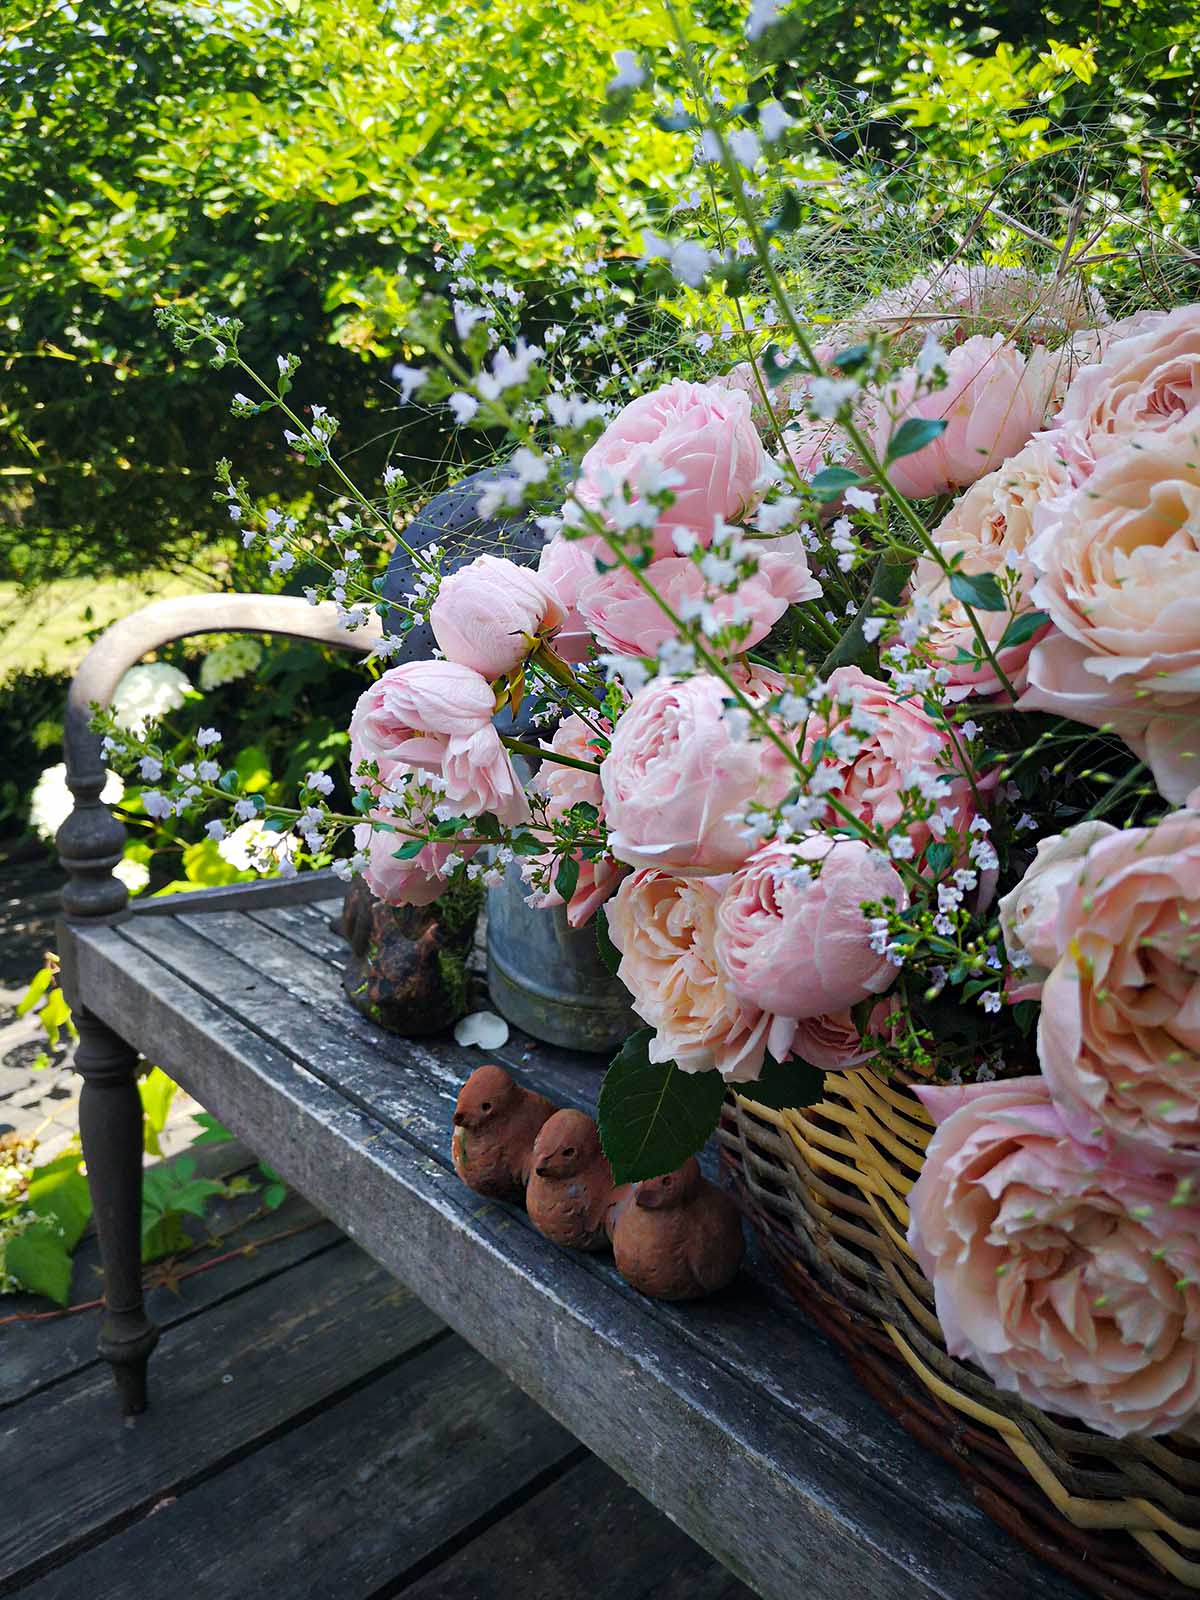 I Love Picking Fresh Roses From My Garden 12